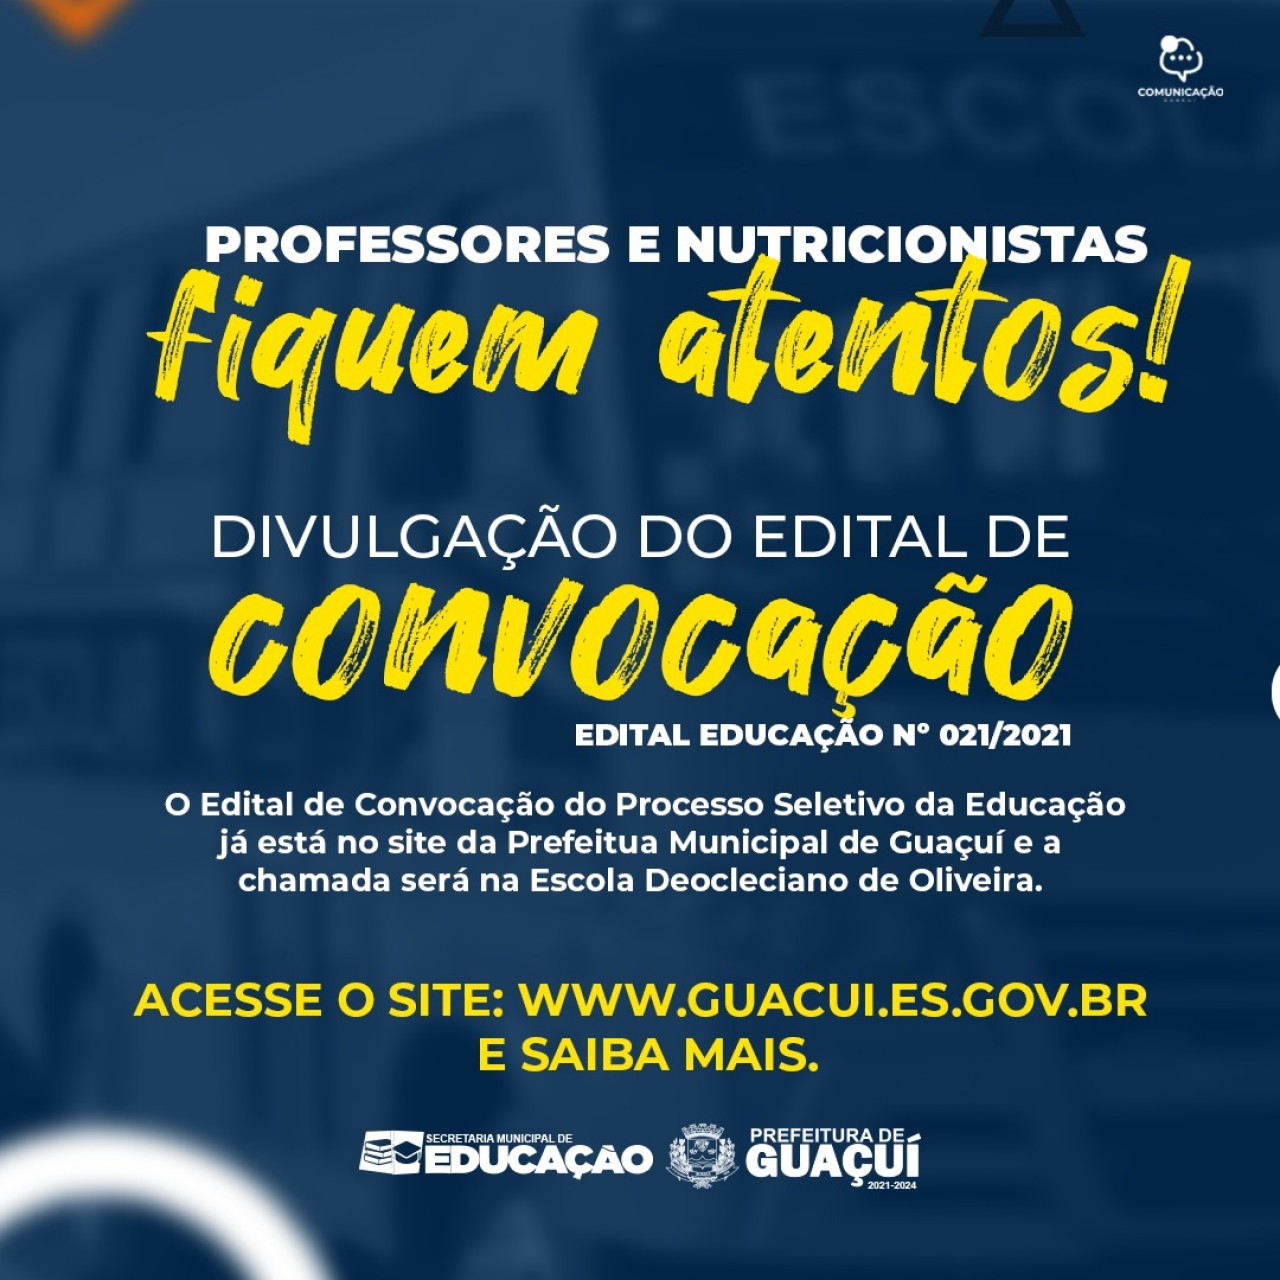 DIVULGADO O EDITAL DE CONVOCAÇÃO DO PROCESSO SELETIVO Nº 21/2021 - PROFESSORES E NUTRICIONISTAS